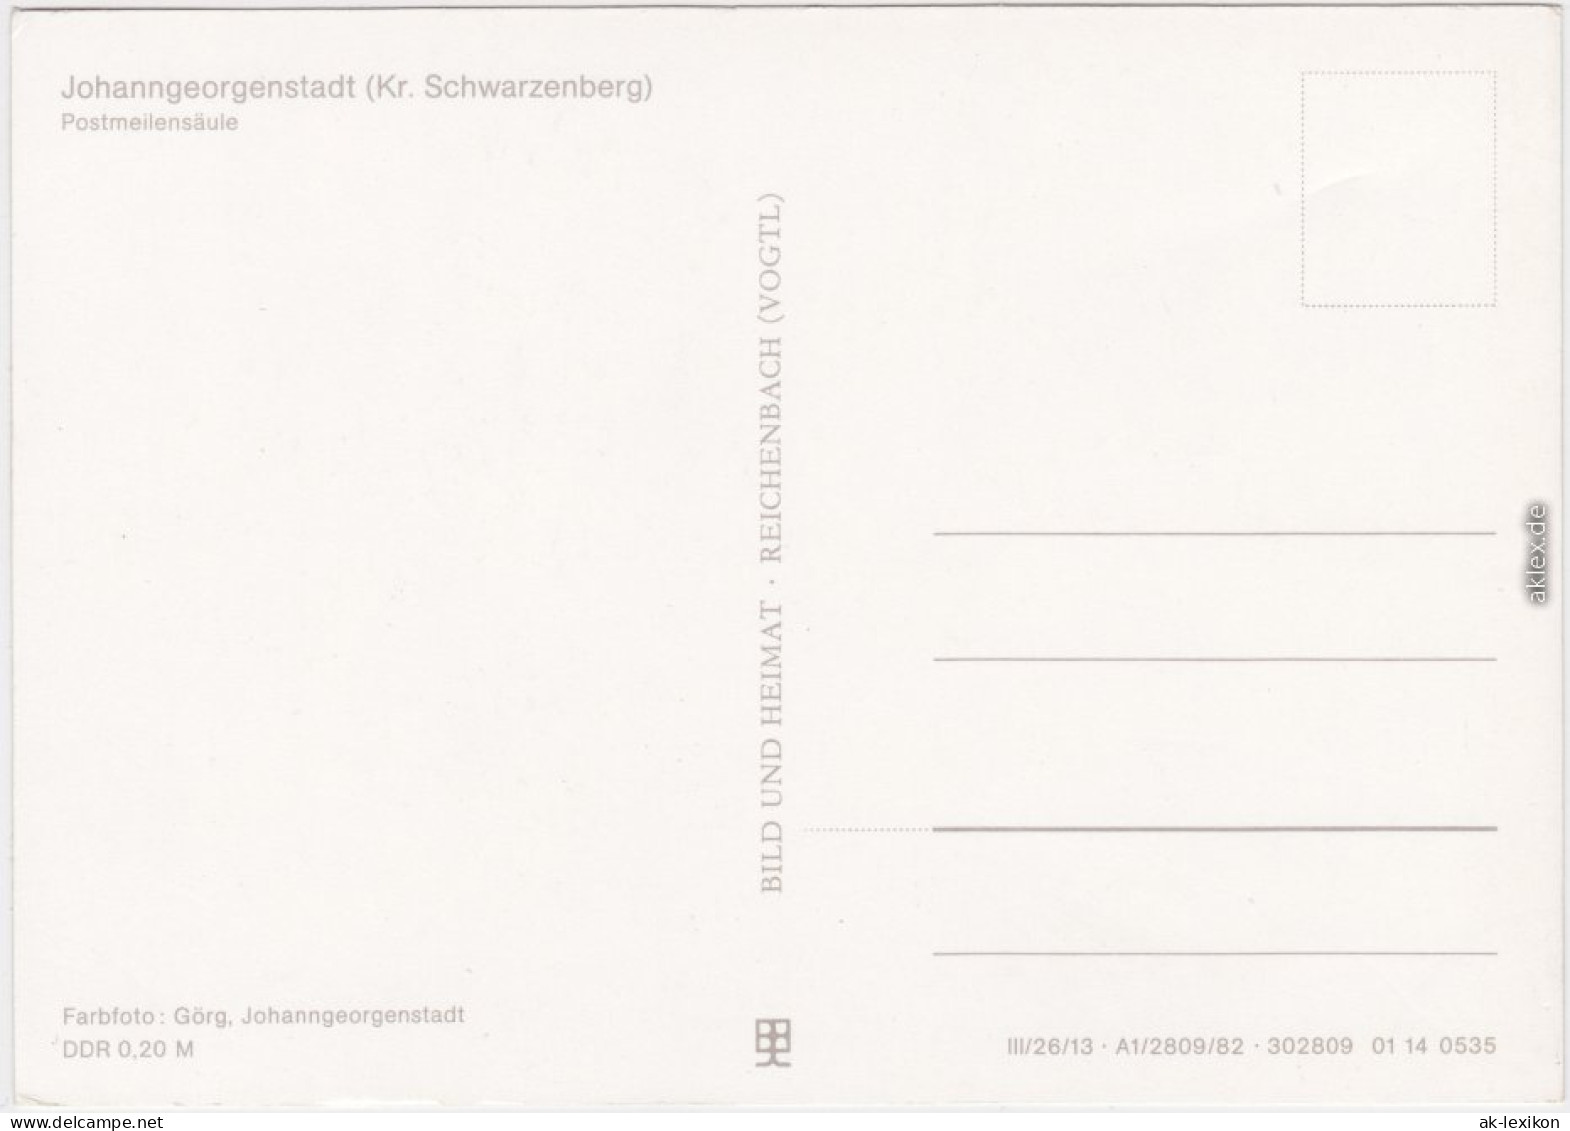 Johanngeorgenstadt Postmeilensäule Ansichtskarte  1982 - Johanngeorgenstadt